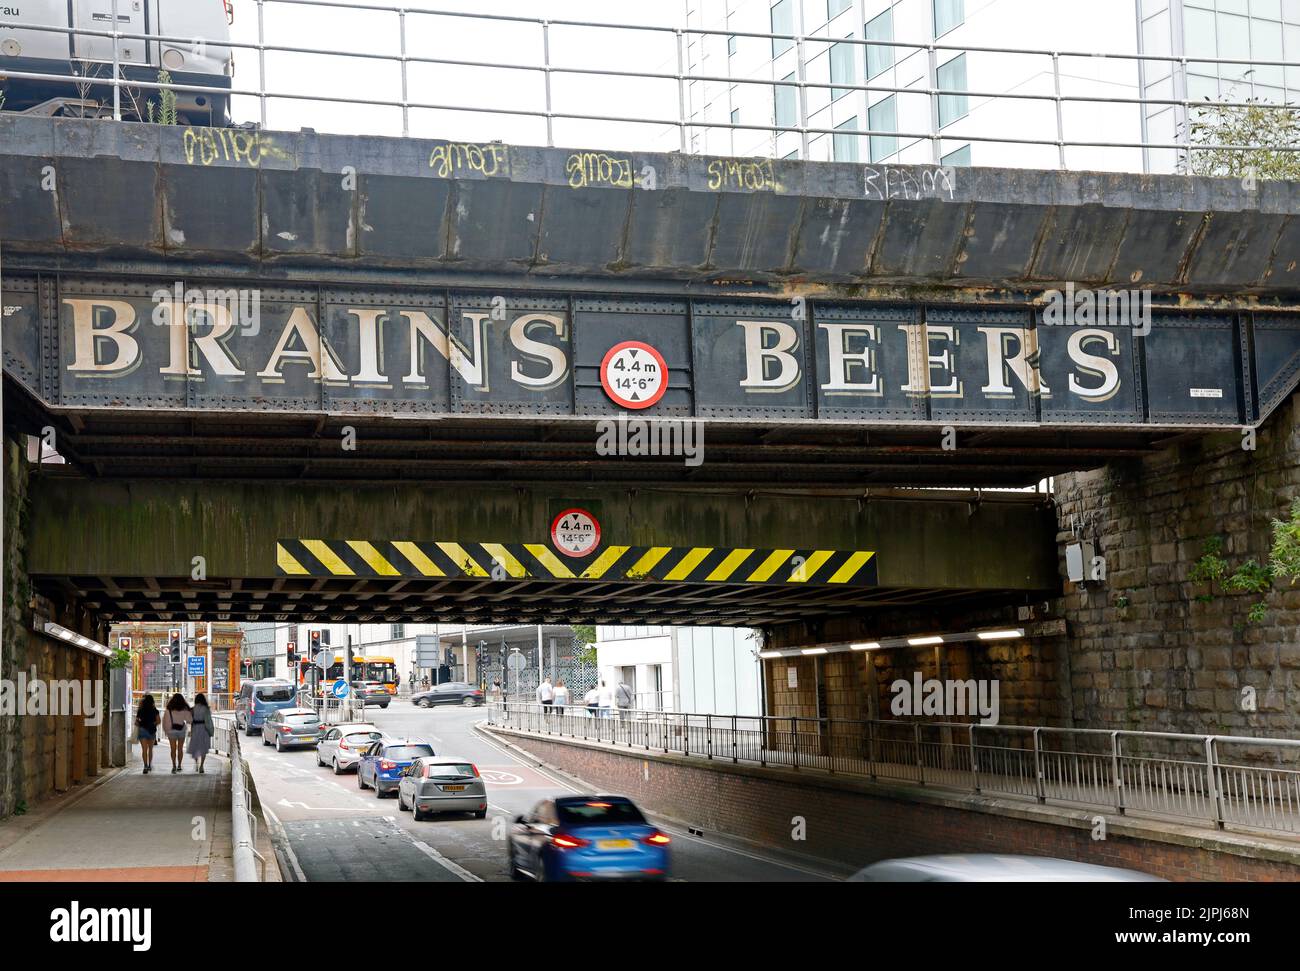 Werbung für Brains Biere, auf einer Eisenbahnbrücke über eine Straße. Cardiff - August 2022. Sommer. Stockfoto